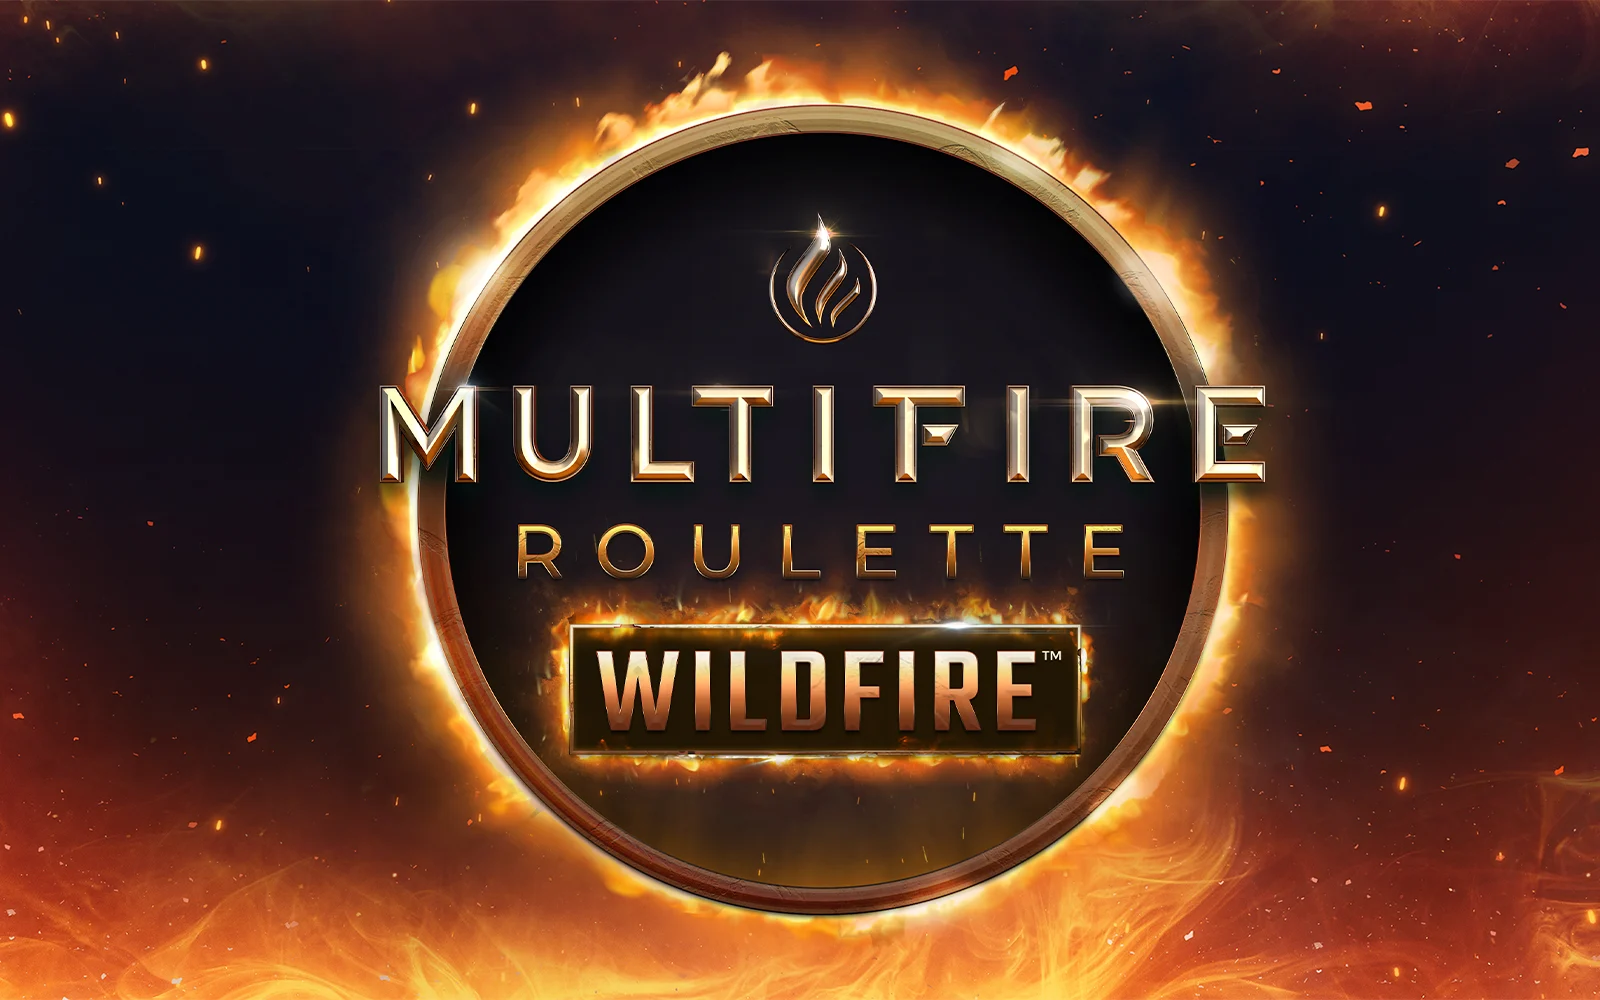 Joacă Multifire Roulette Wildfire™ în cazinoul online Starcasino.be